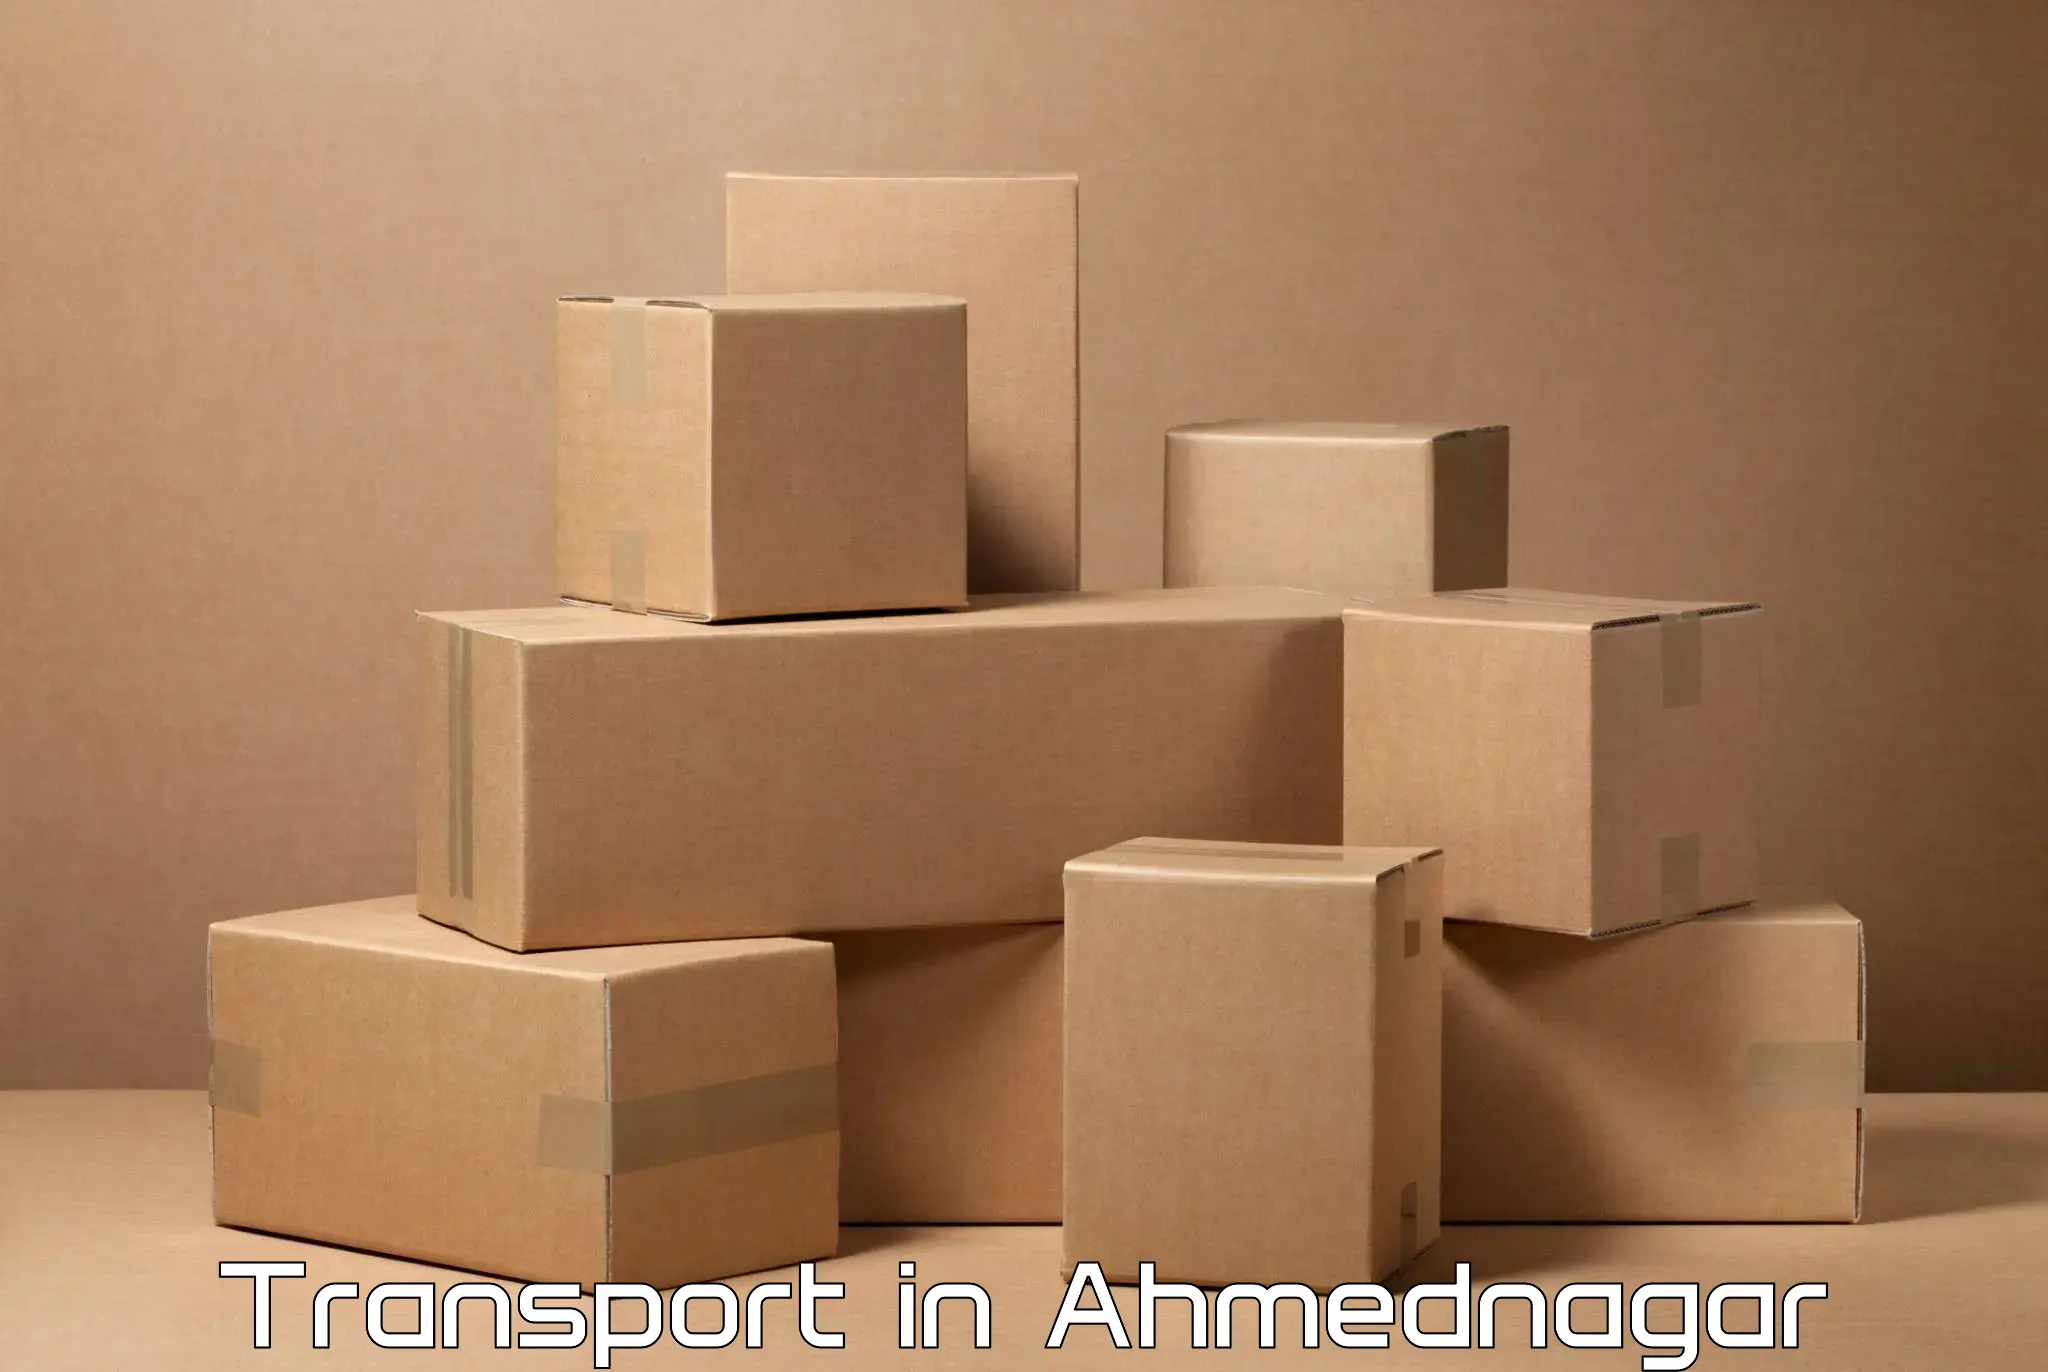 Daily parcel service transport in Ahmednagar